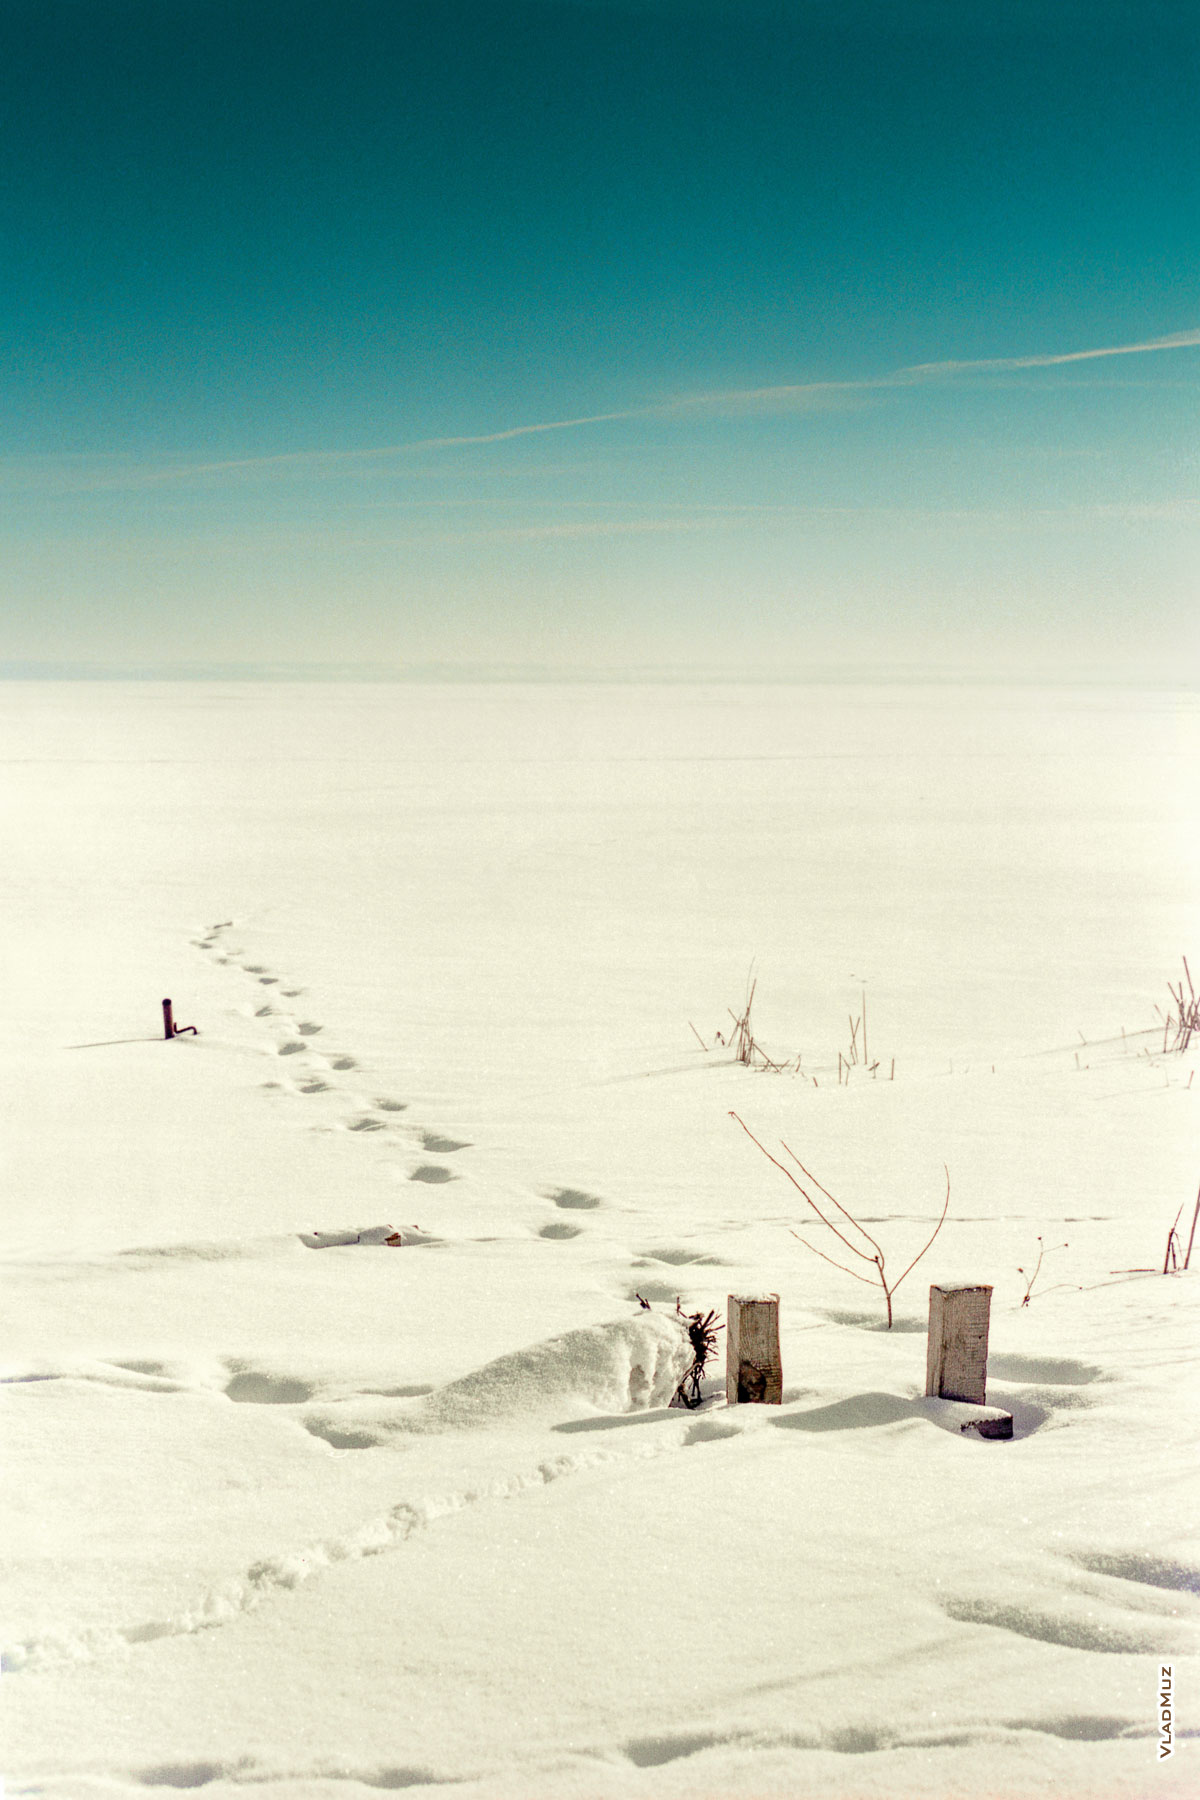 Одинокие следы на снегу, уходящие вдаль